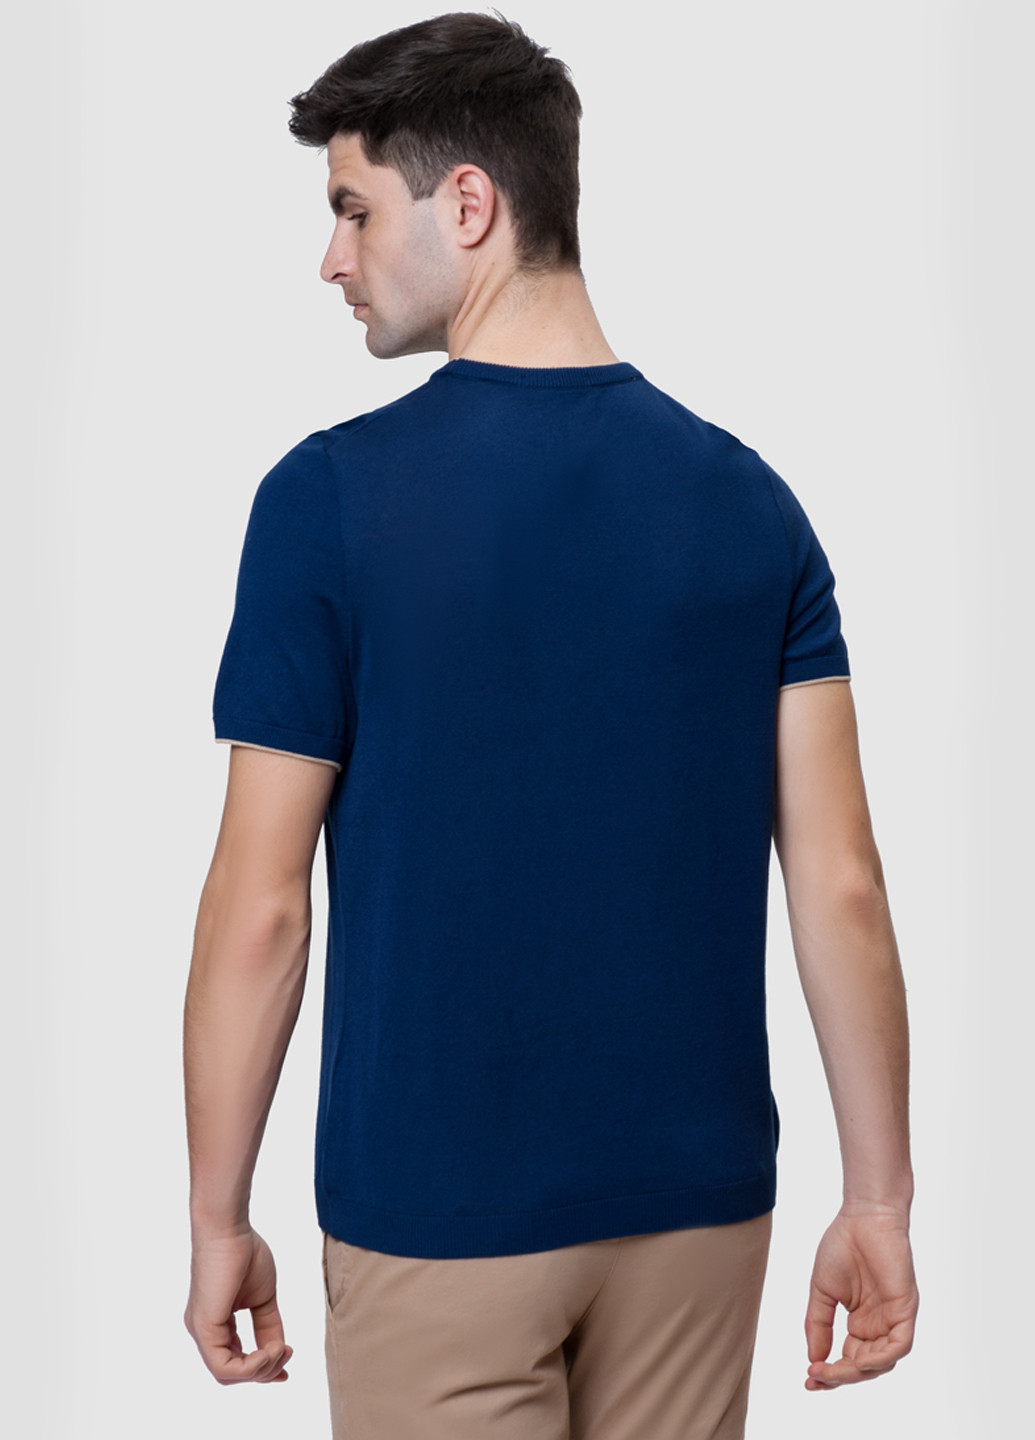 Синяя футболка вязаная мужская Arber Crew-neck SS AVT-45